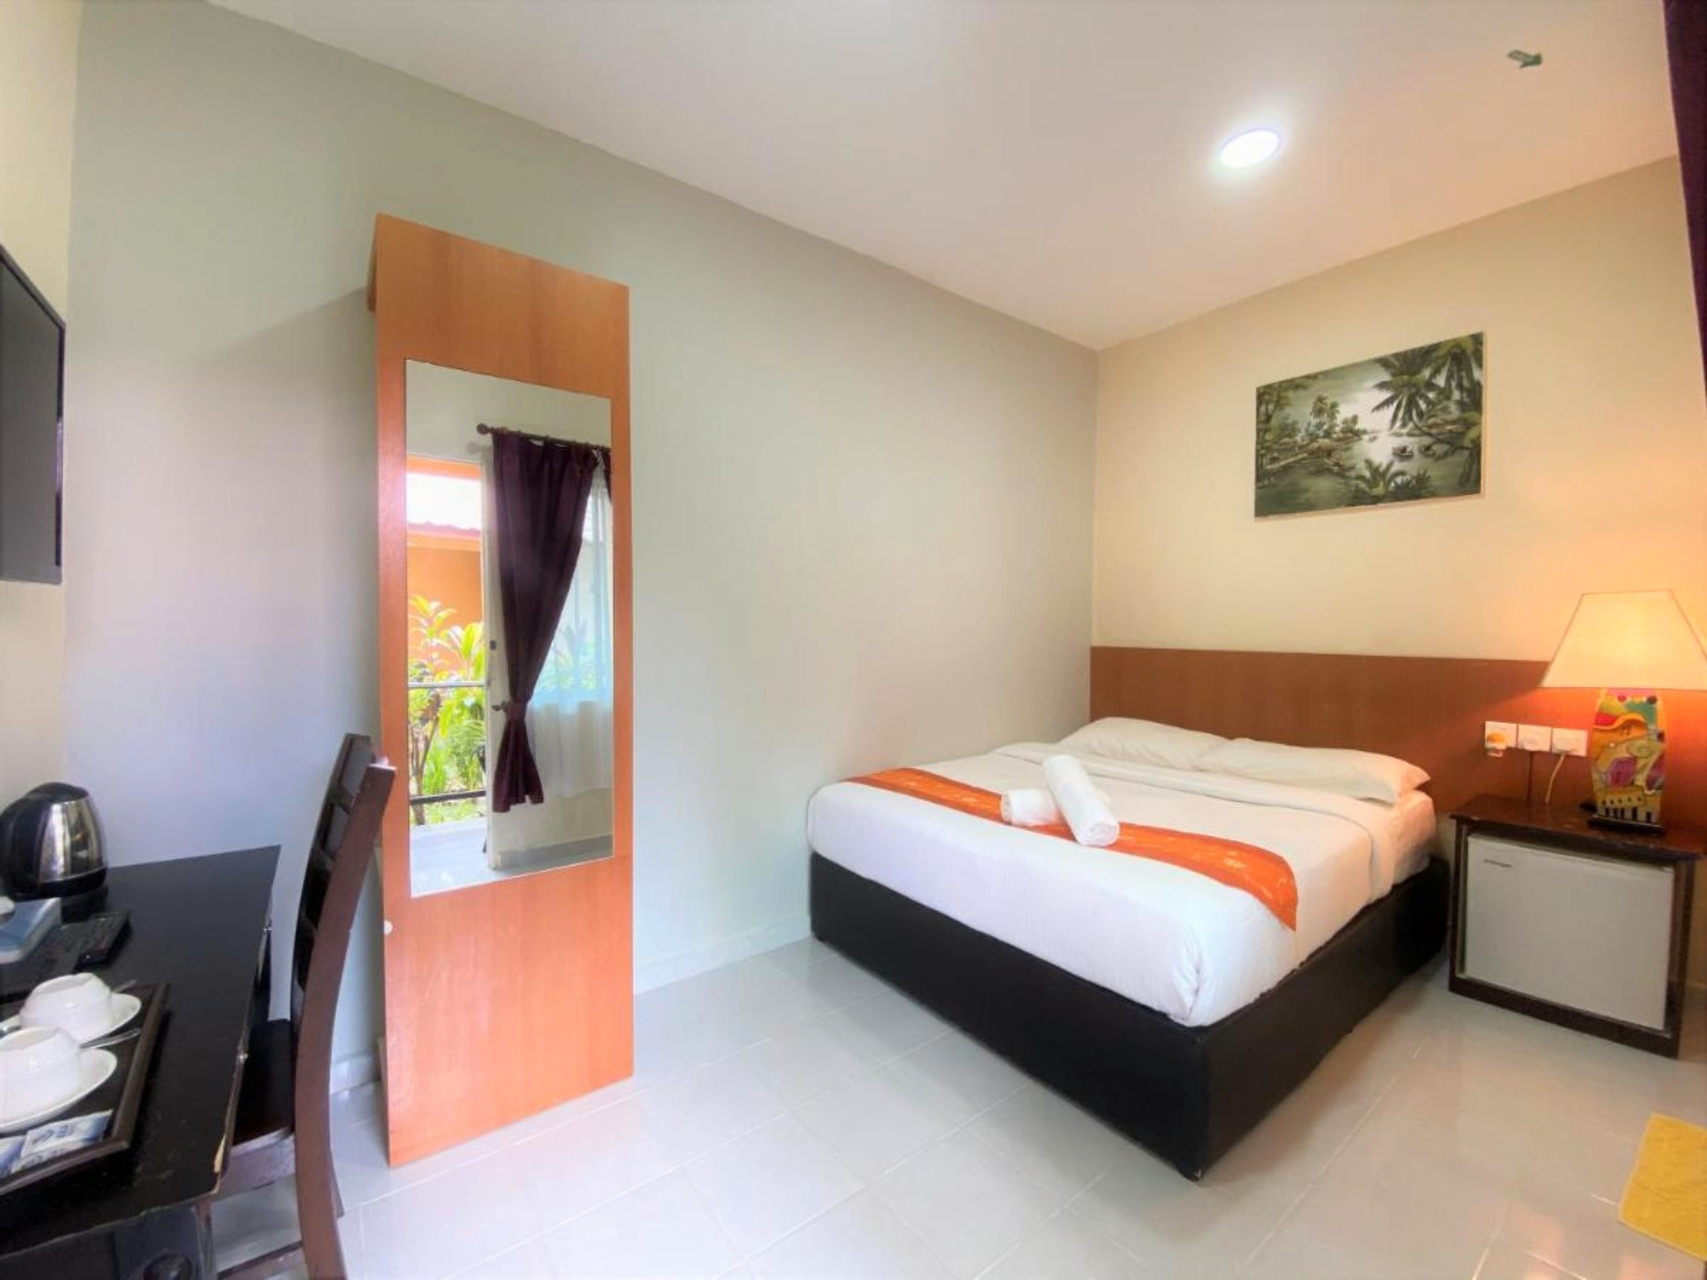 Bedroom 4, Chenang Inn, Langkawi